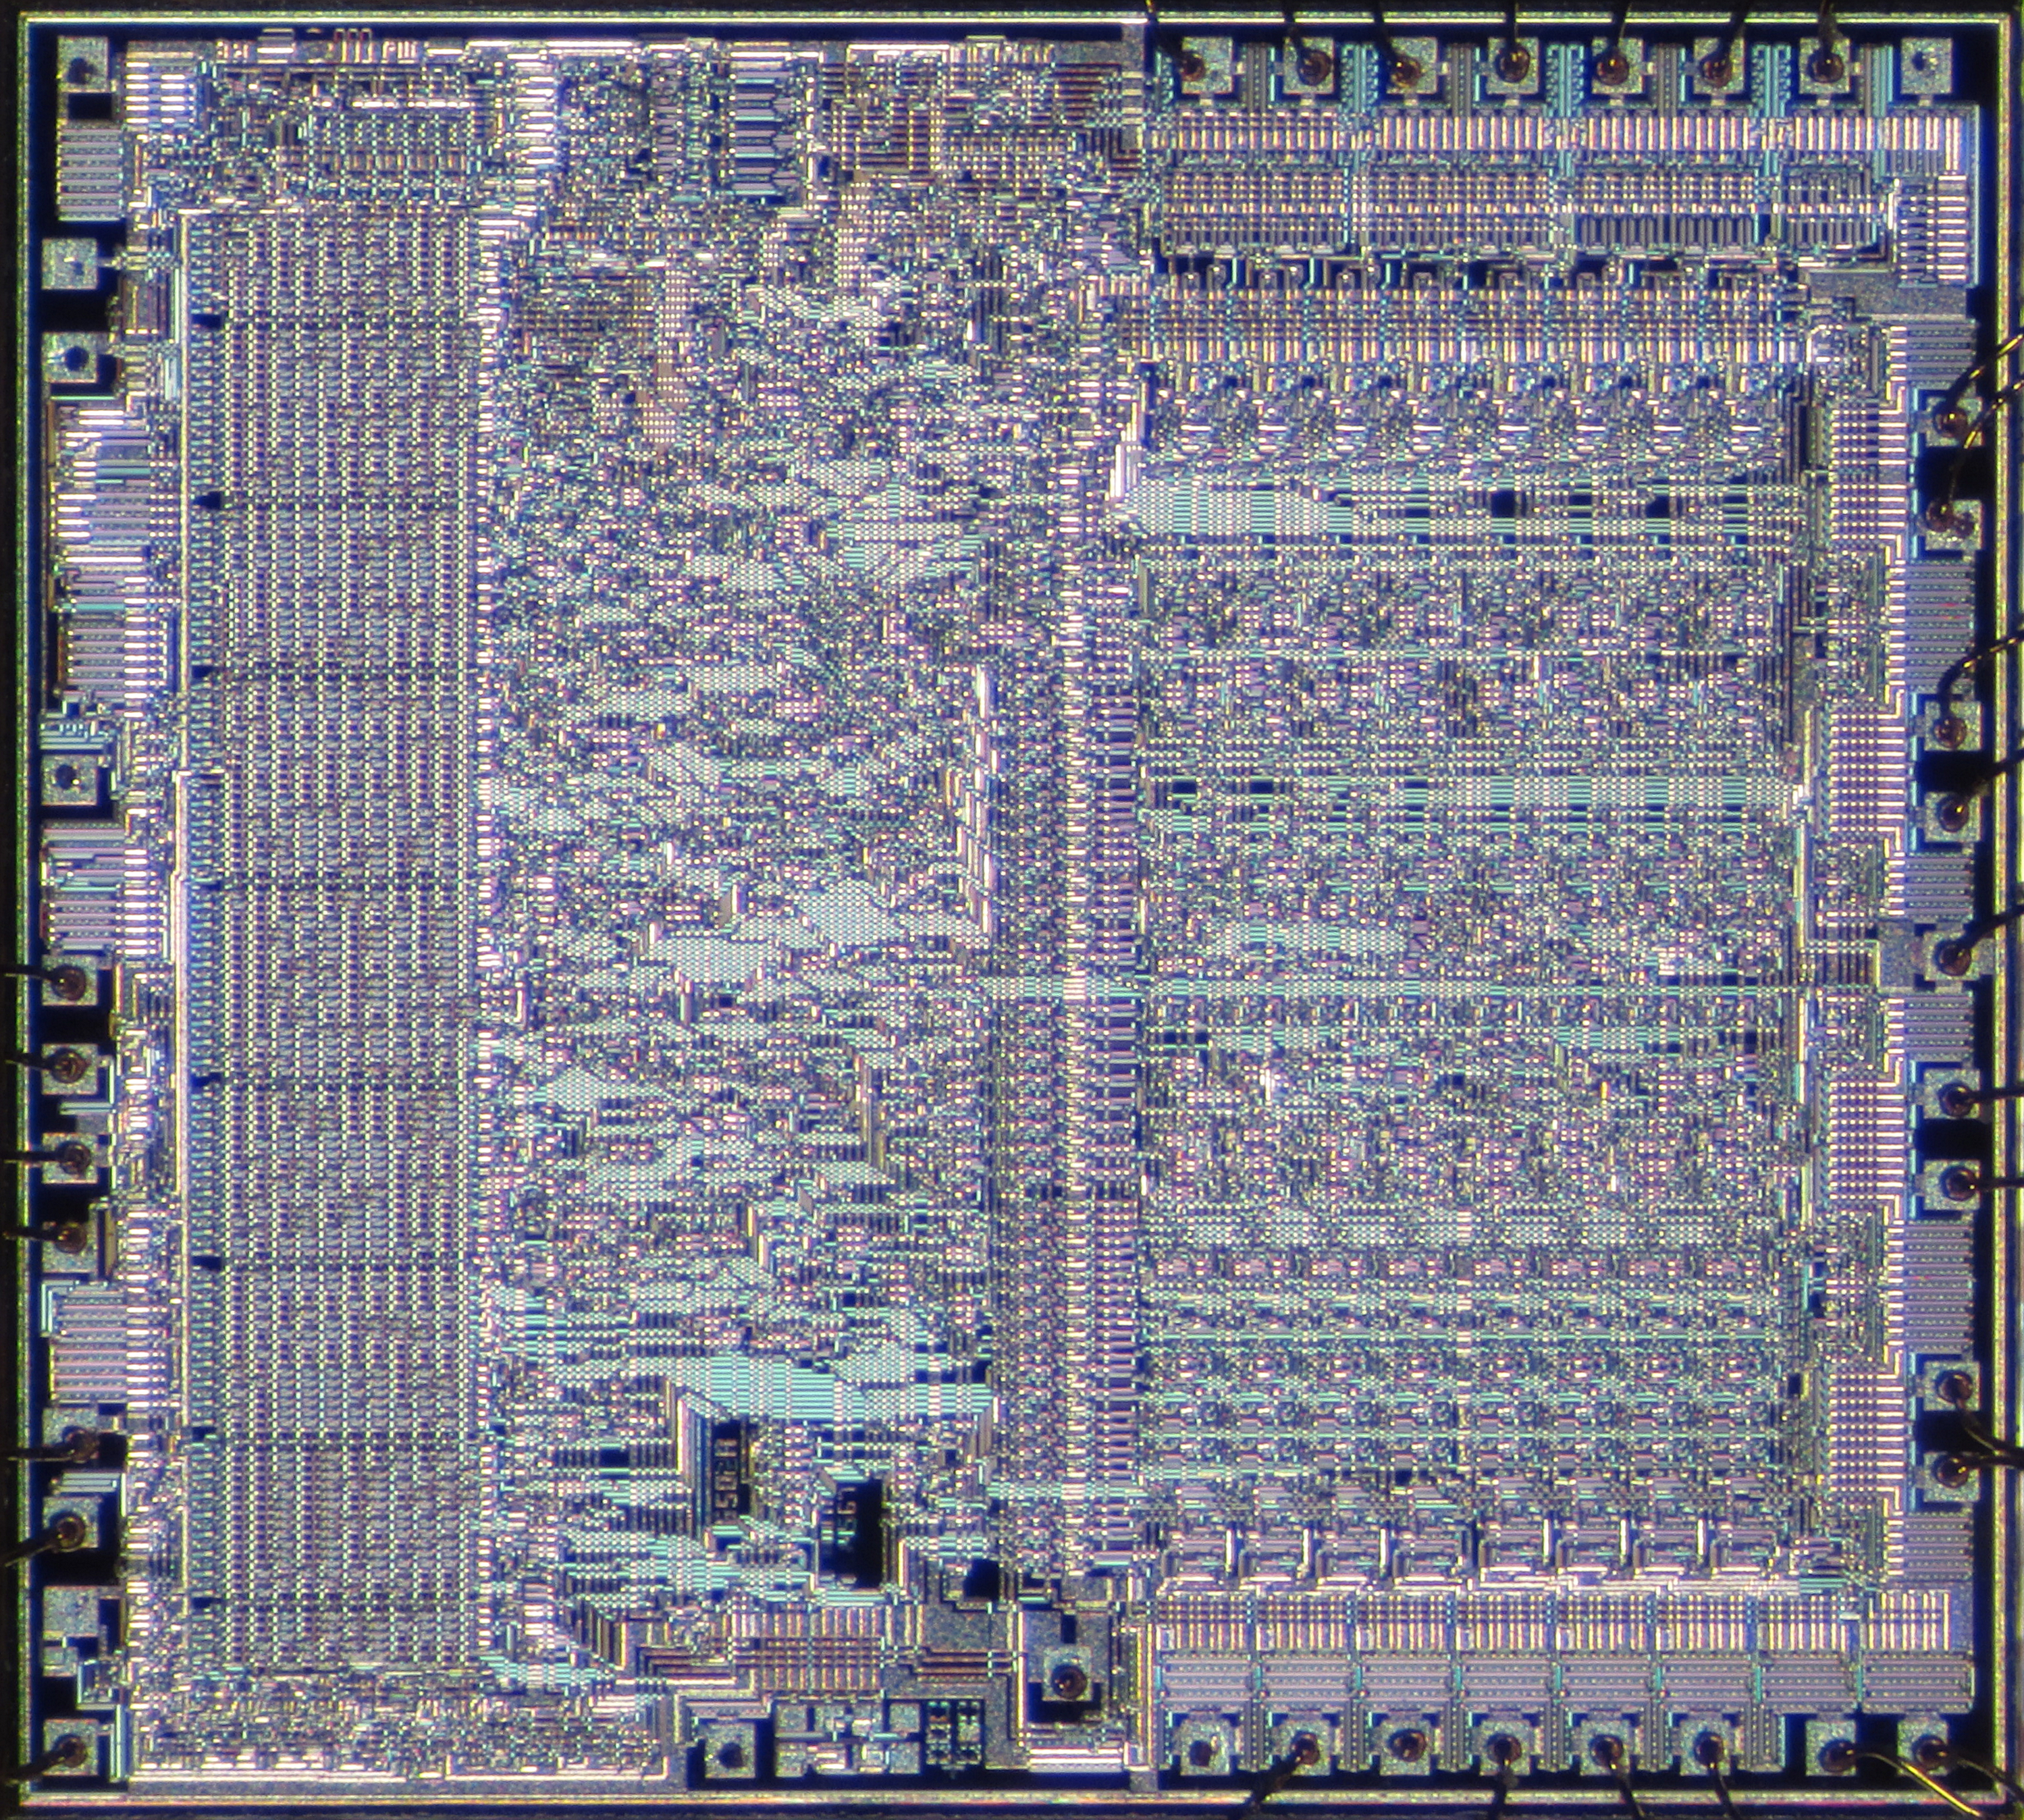 MOS 6502 die.jpg - Wikimedia Commons